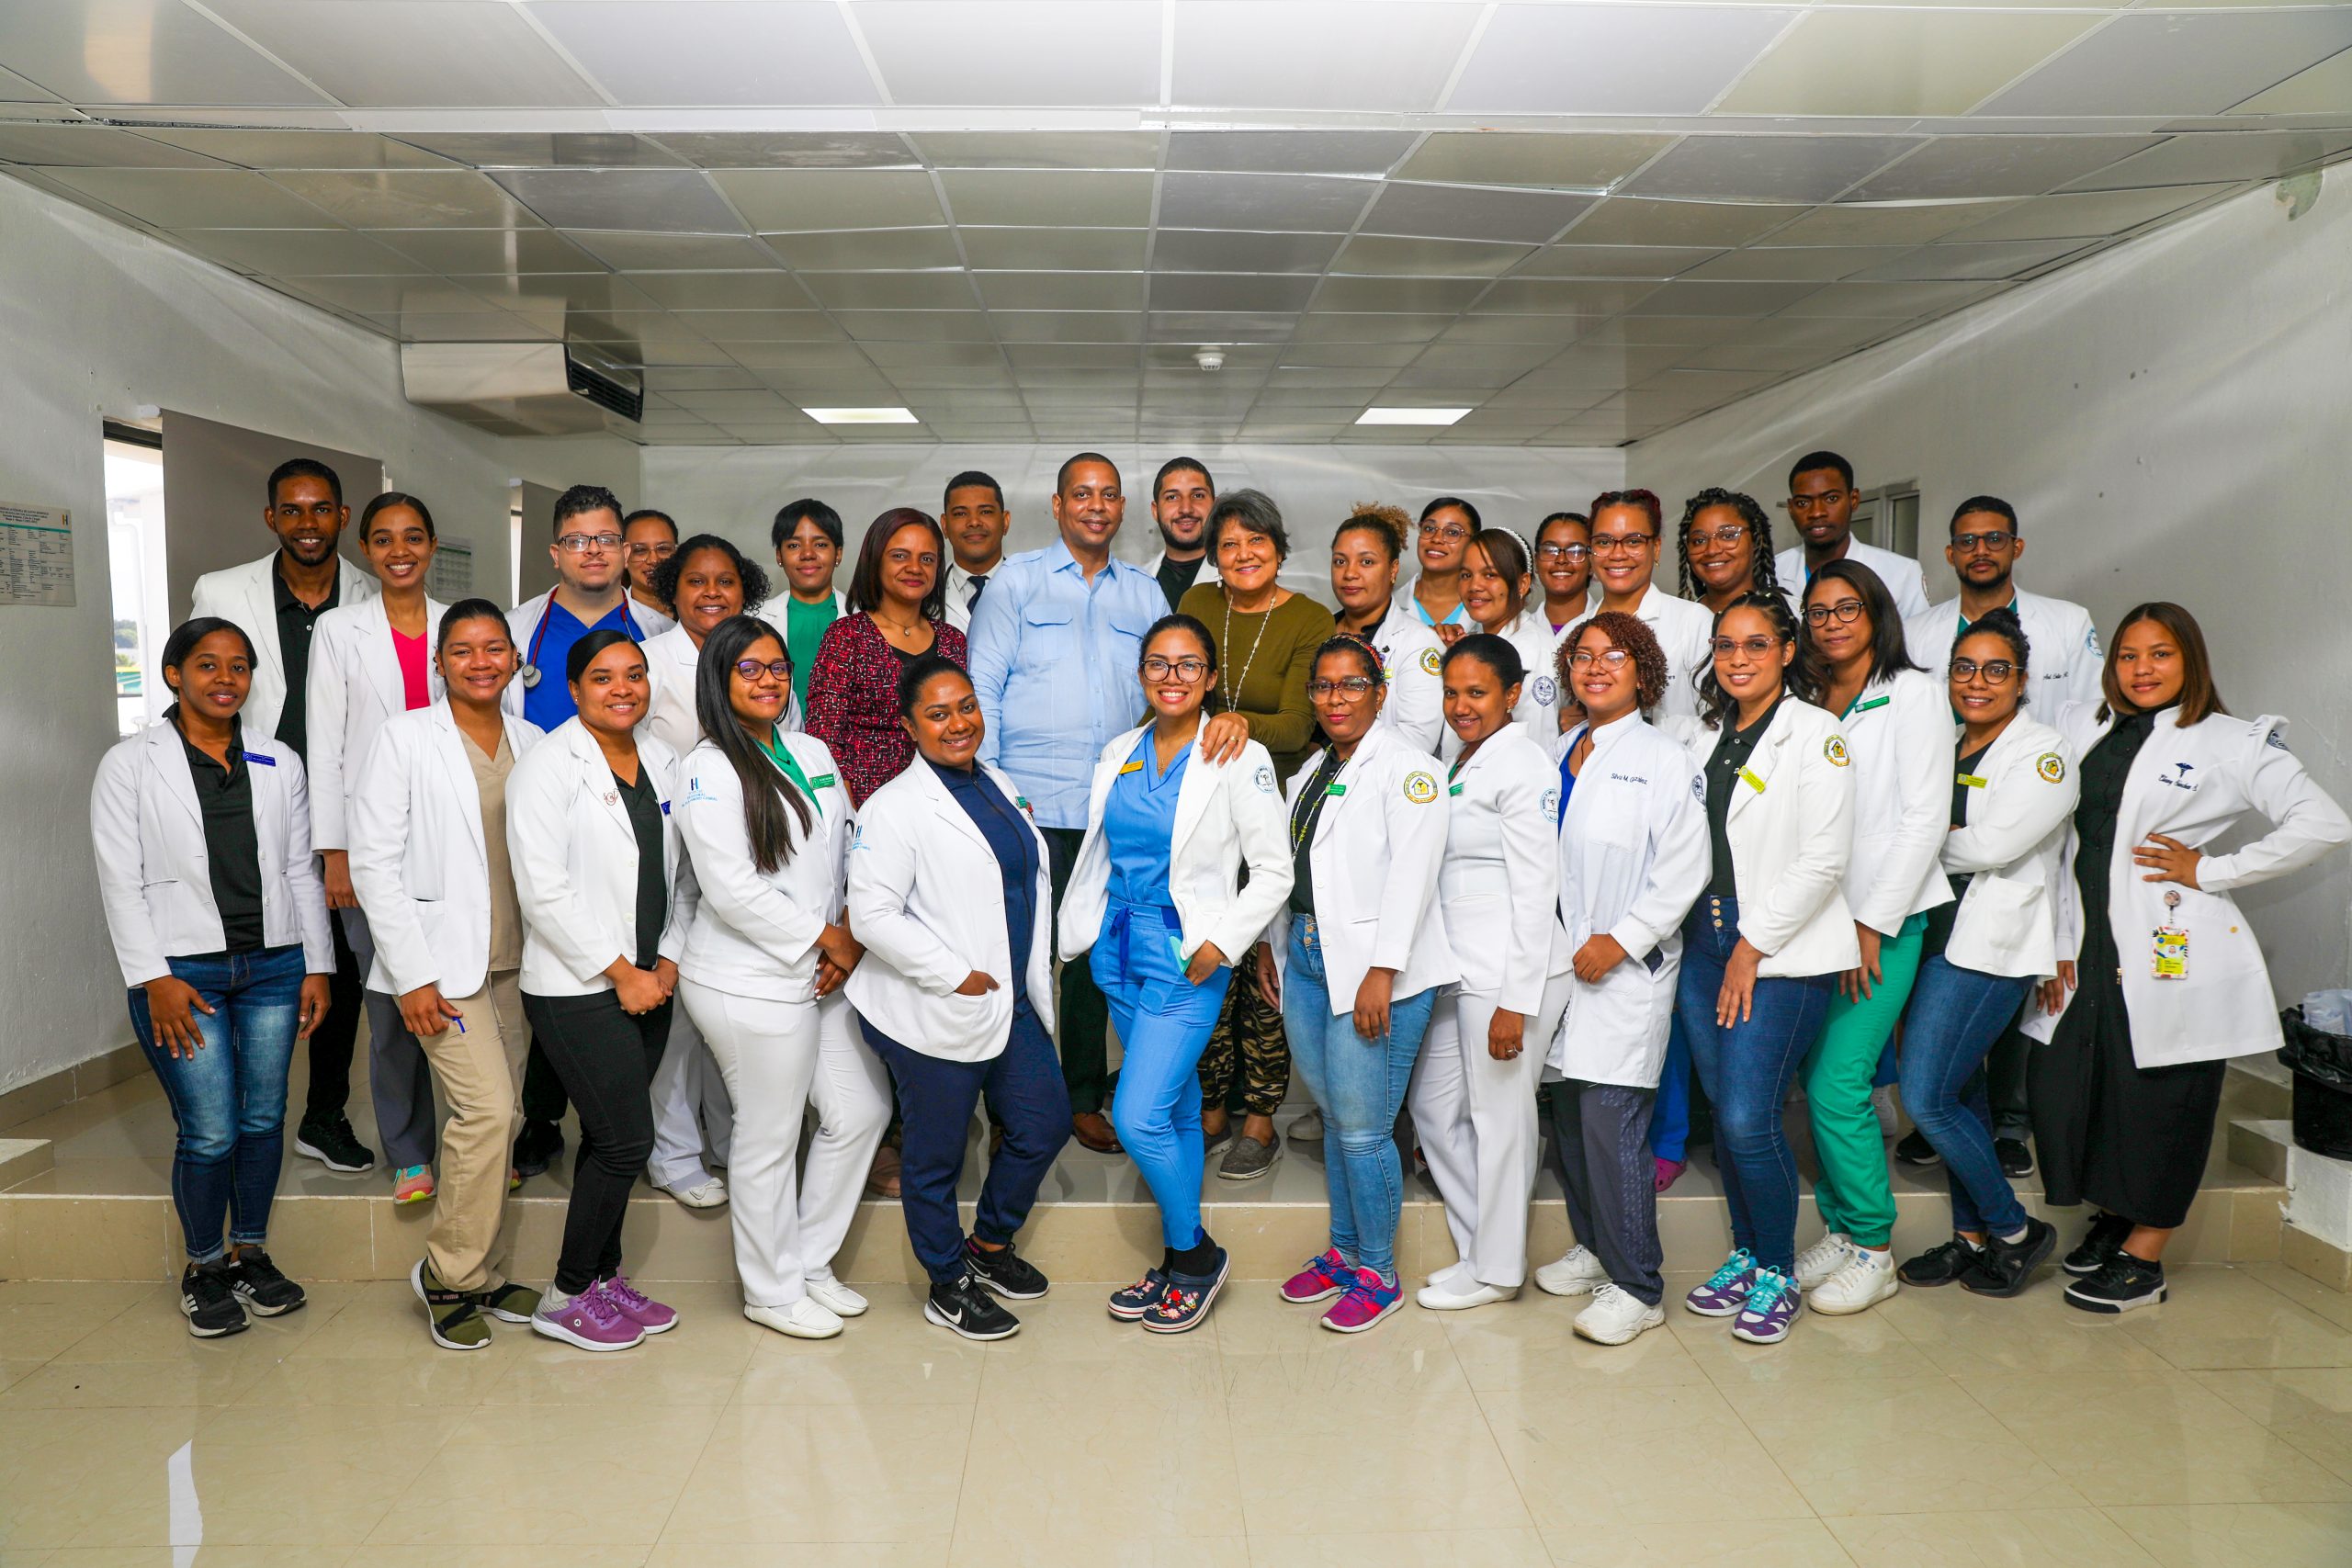 UASD Recinto San Juan y el Hospital Regional Dr. Alejandro Cabral, asumen el compromiso de formacion y docencia por medio de un Taller de Lactancia Materna, impartido por la Dra. Dionni Batista,Gineco-Obstetra.